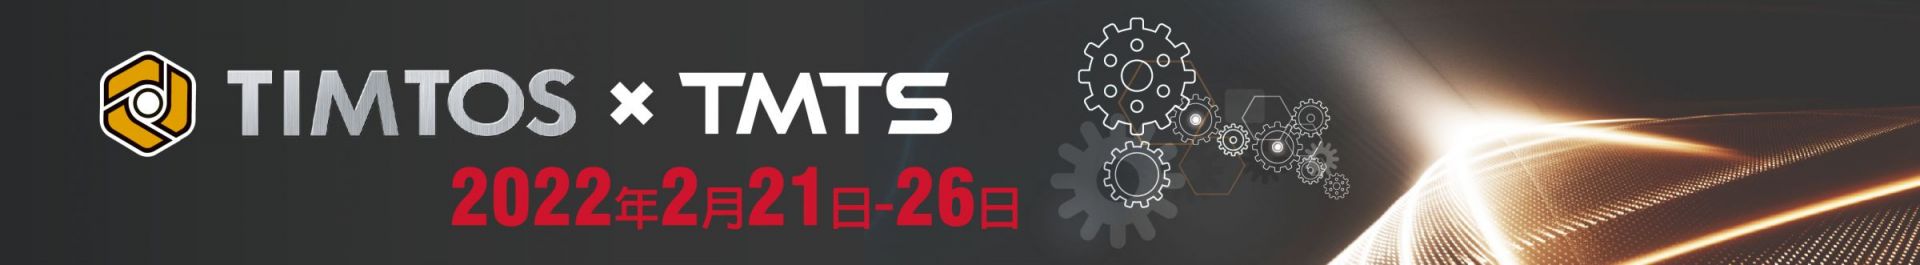 TIMTOS x TMTS 2022 Feria internacional de máquinas herramienta de Taipéi